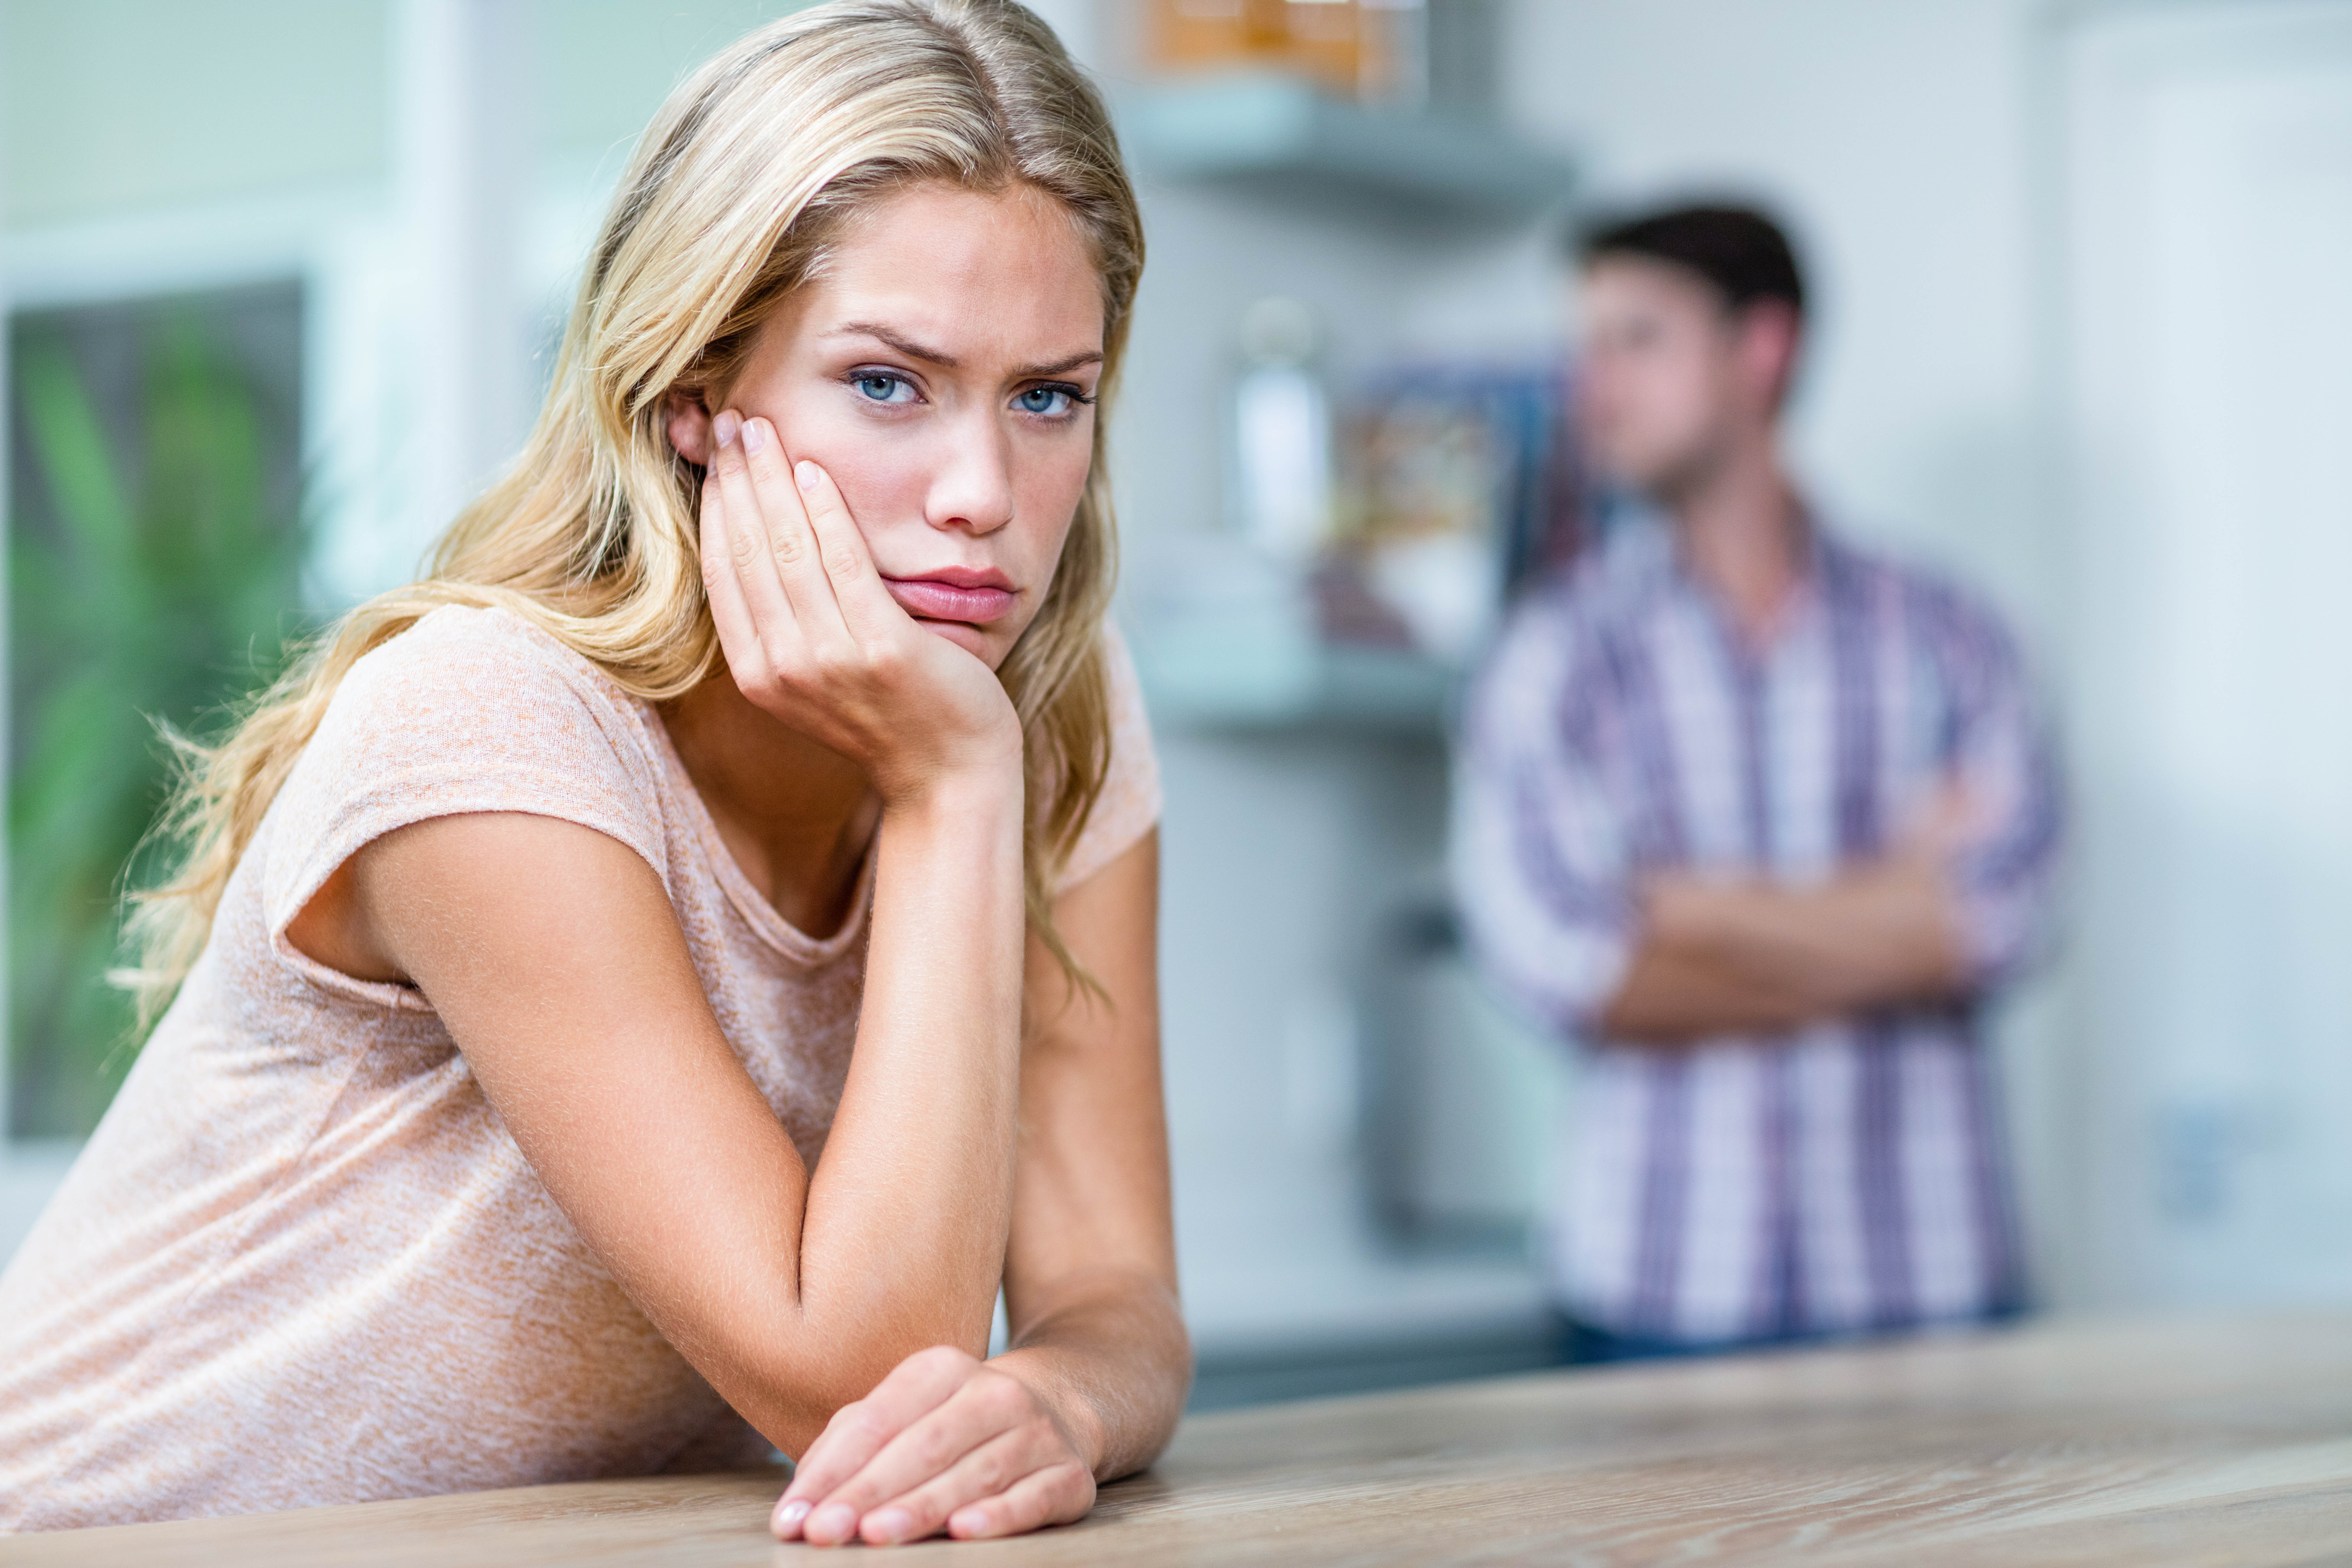 An upset woman | Source: Shutterstock